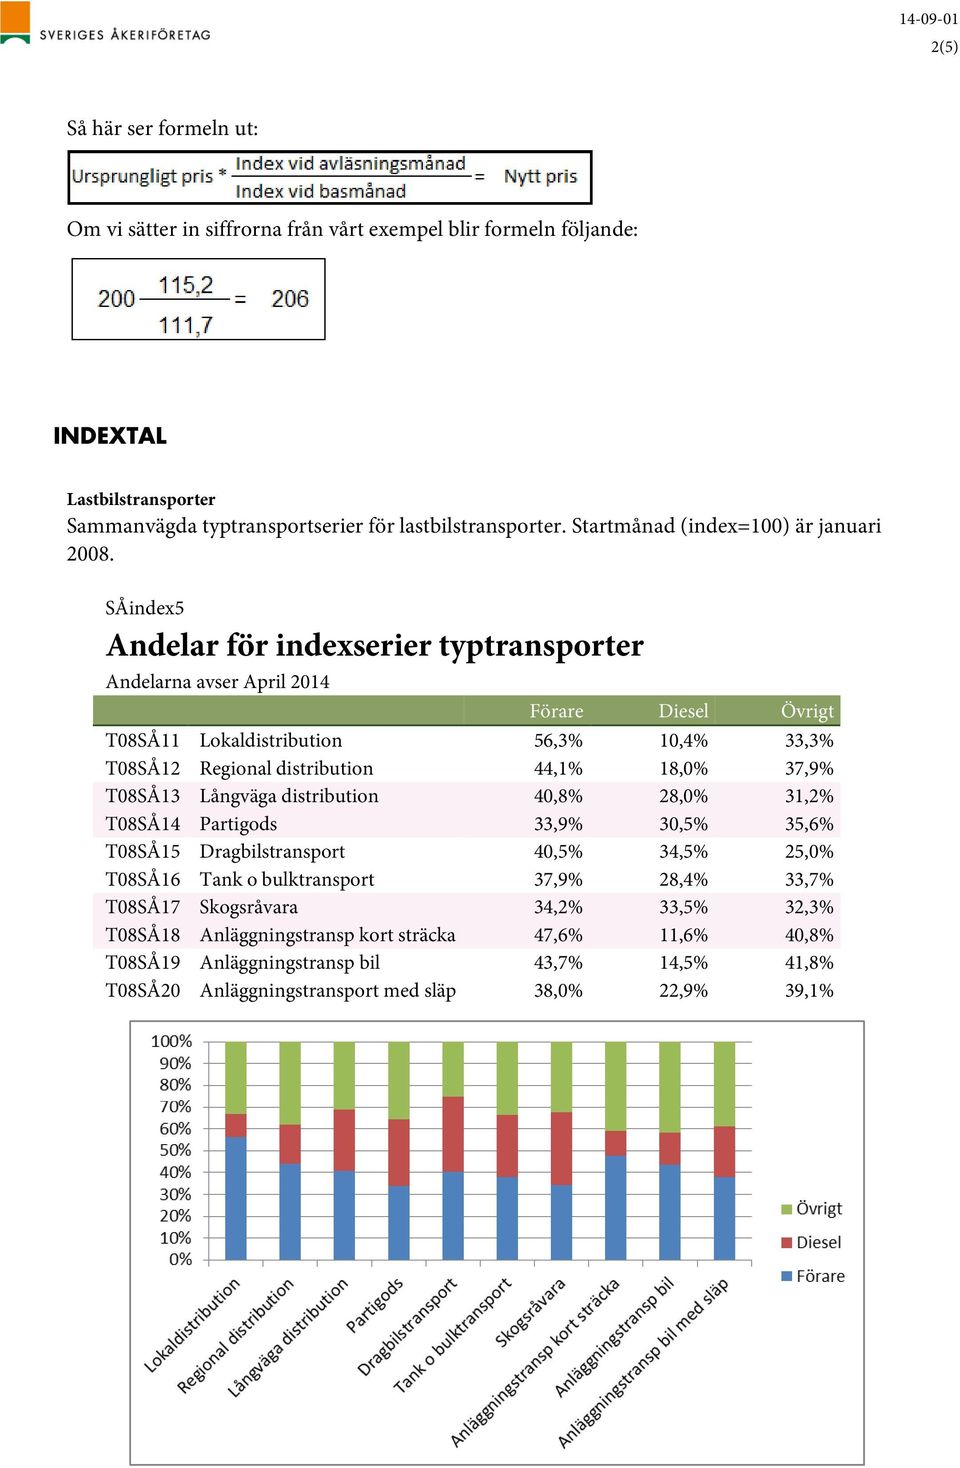 SÅindex5 Andelar för indexserier typtransporter Andelarna avser April 2014 Förare Diesel Övrigt T08SÅ11 Lokaldistribution 56,3% 10,4% 33,3% T08SÅ12 Regional distribution 44,1% 18,0% 37,9% T08SÅ13